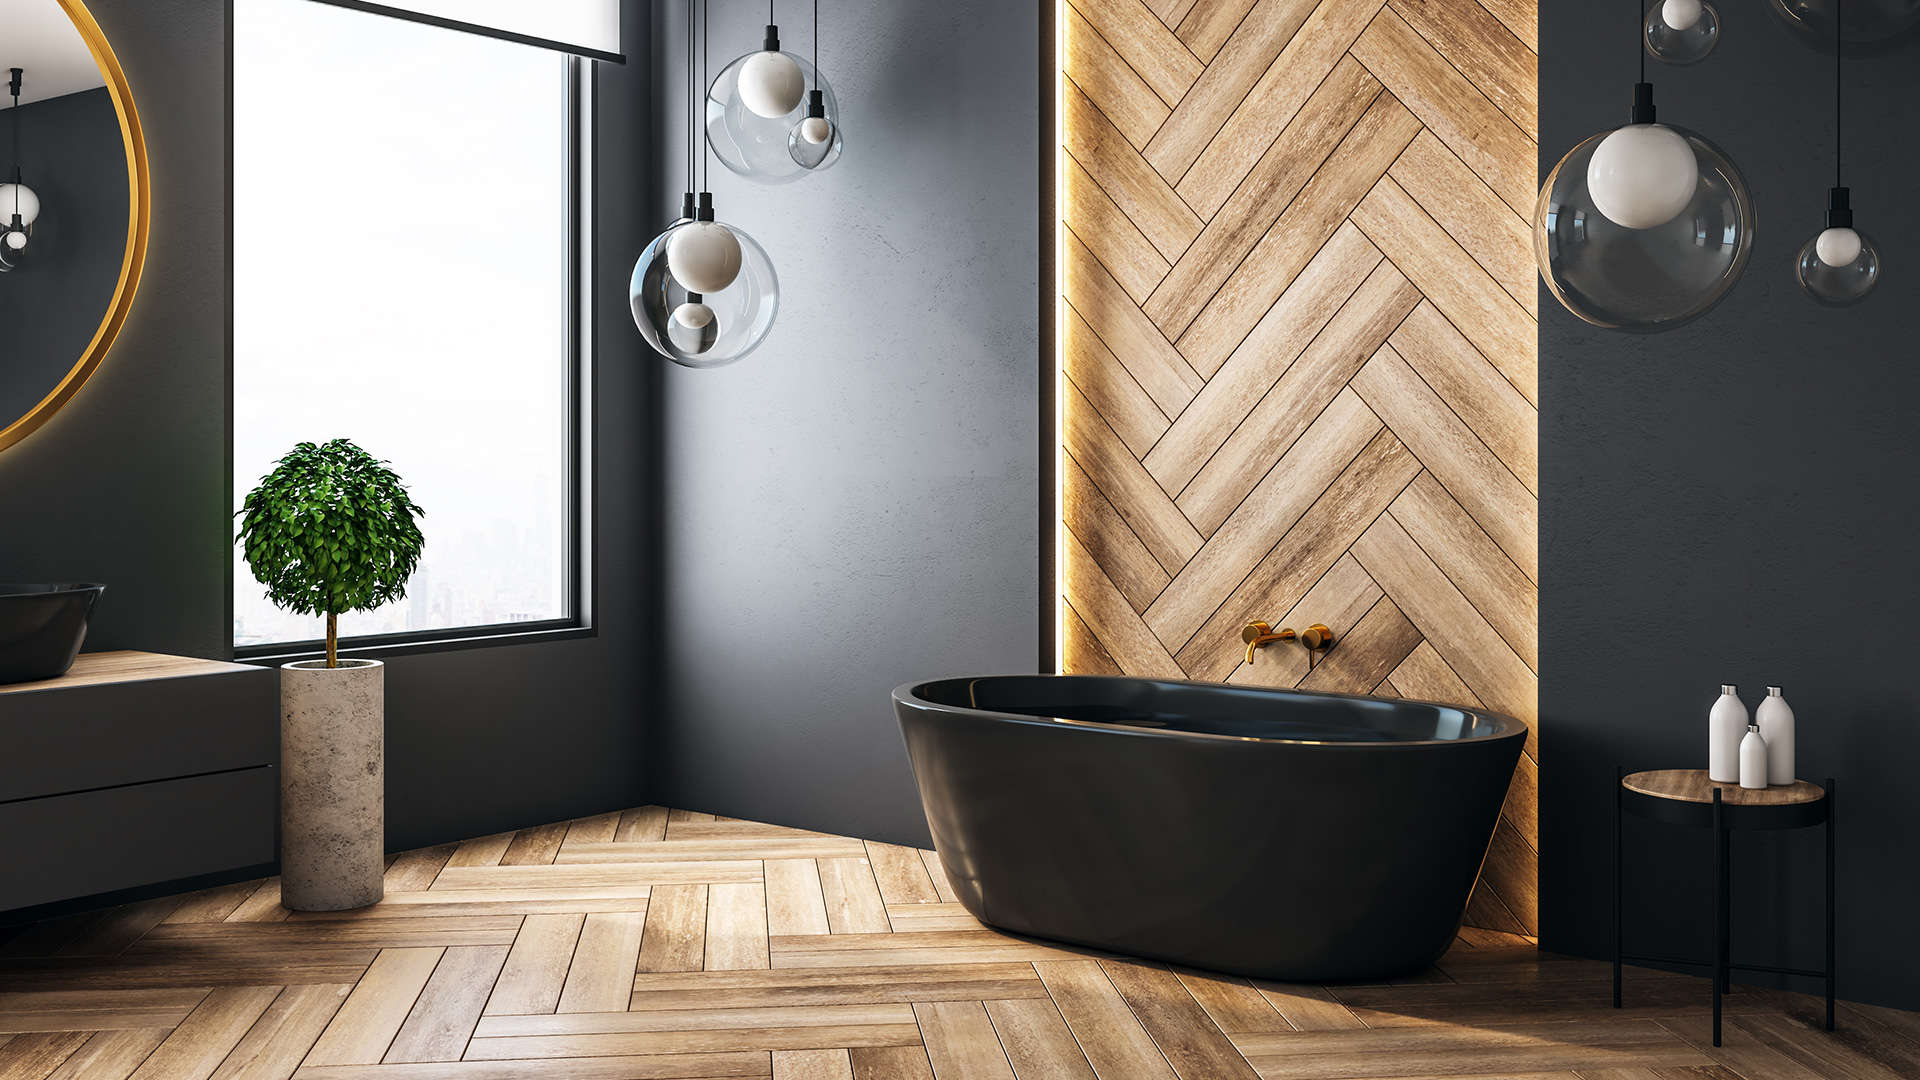 drewnopodobne płytki na podłodze łazienki ułożone w jodełkę -  w 2021